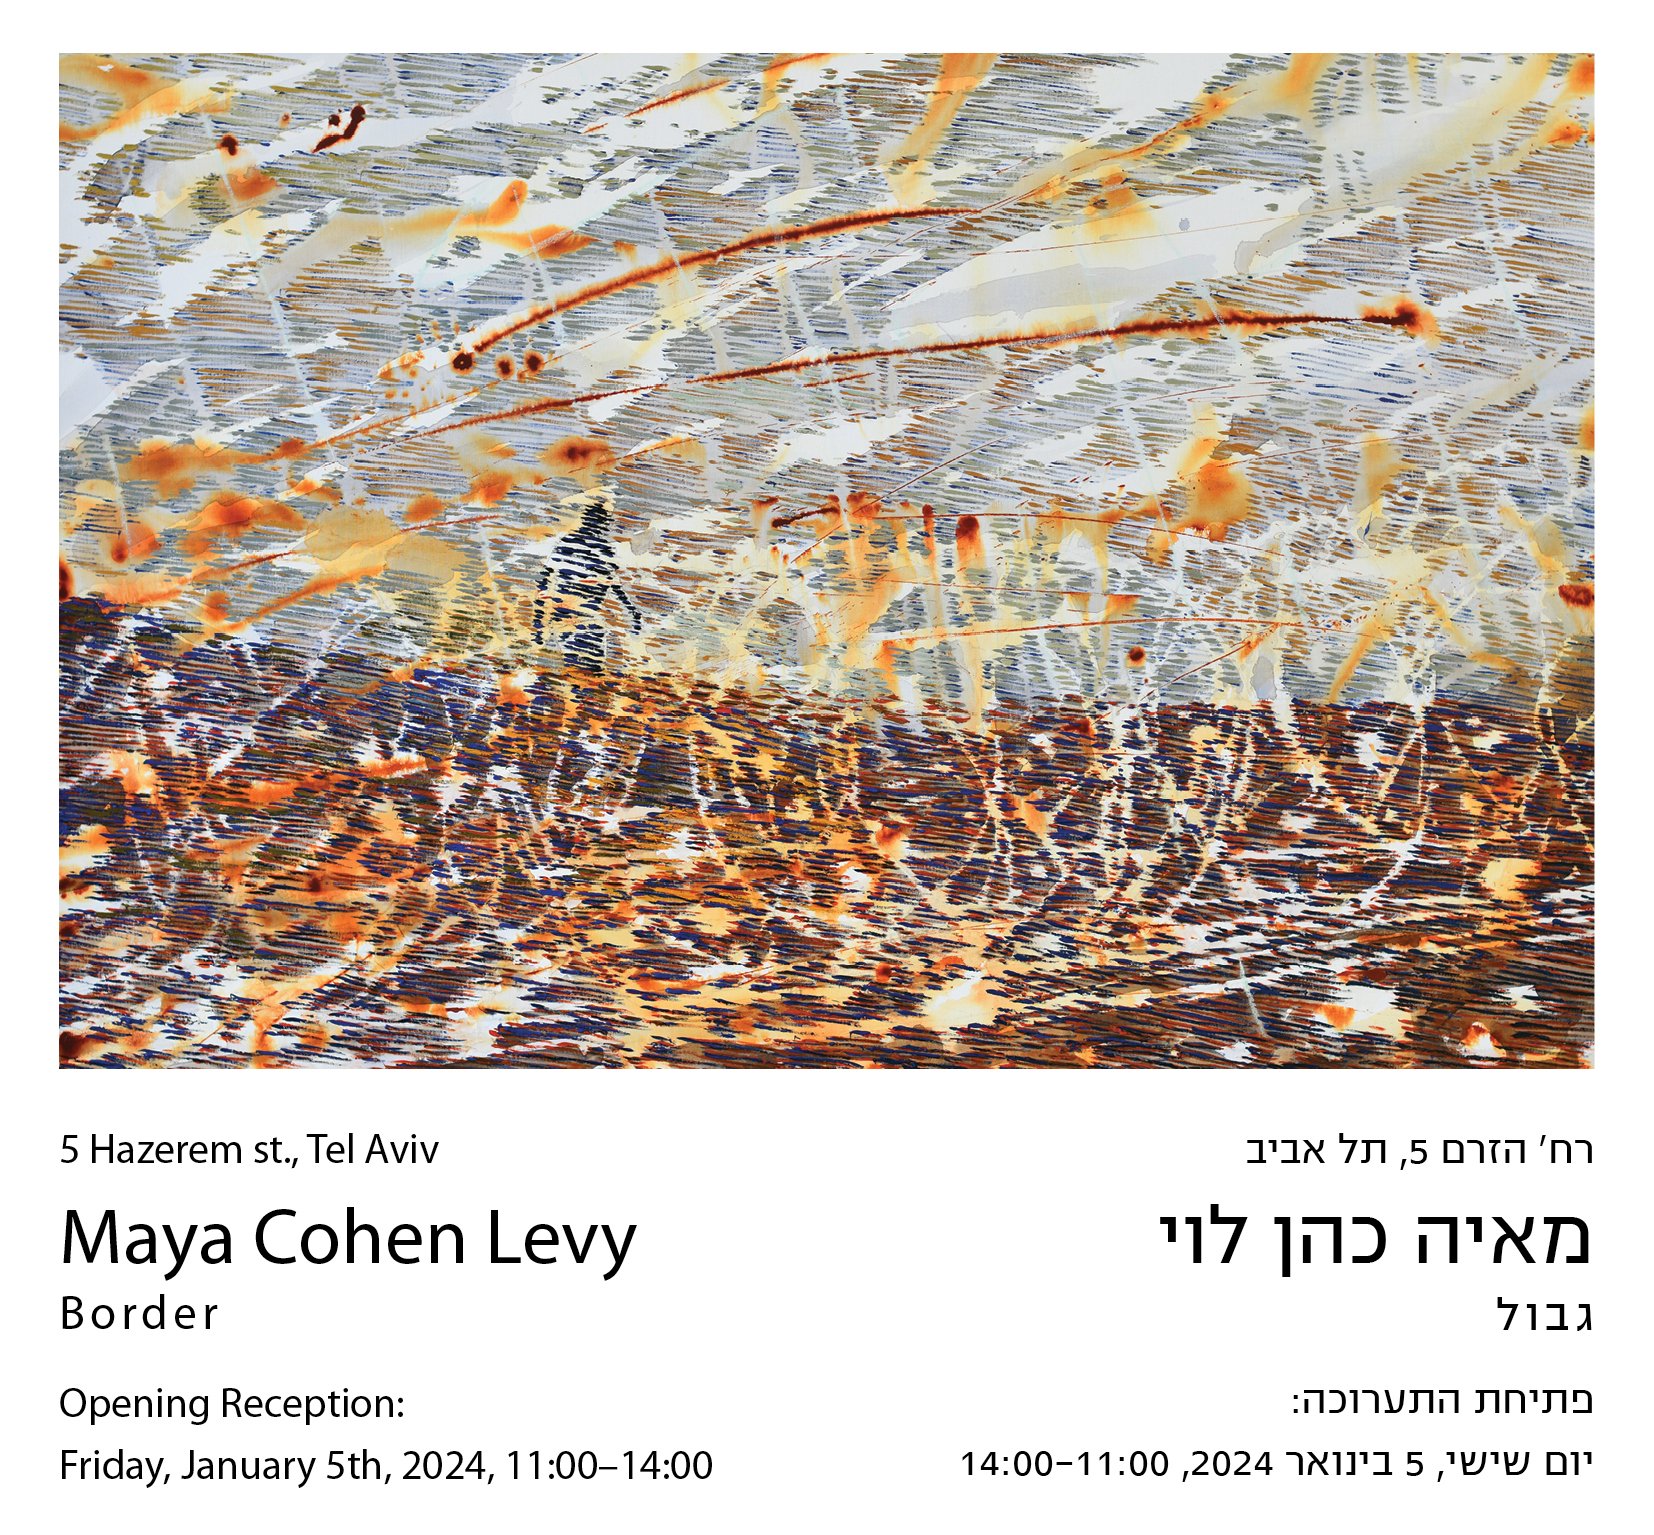 פתיחת שתי תערוכות בגלריה גורדון תל אביב למאיה כהן לוי ובן הגרי | 5.1.24